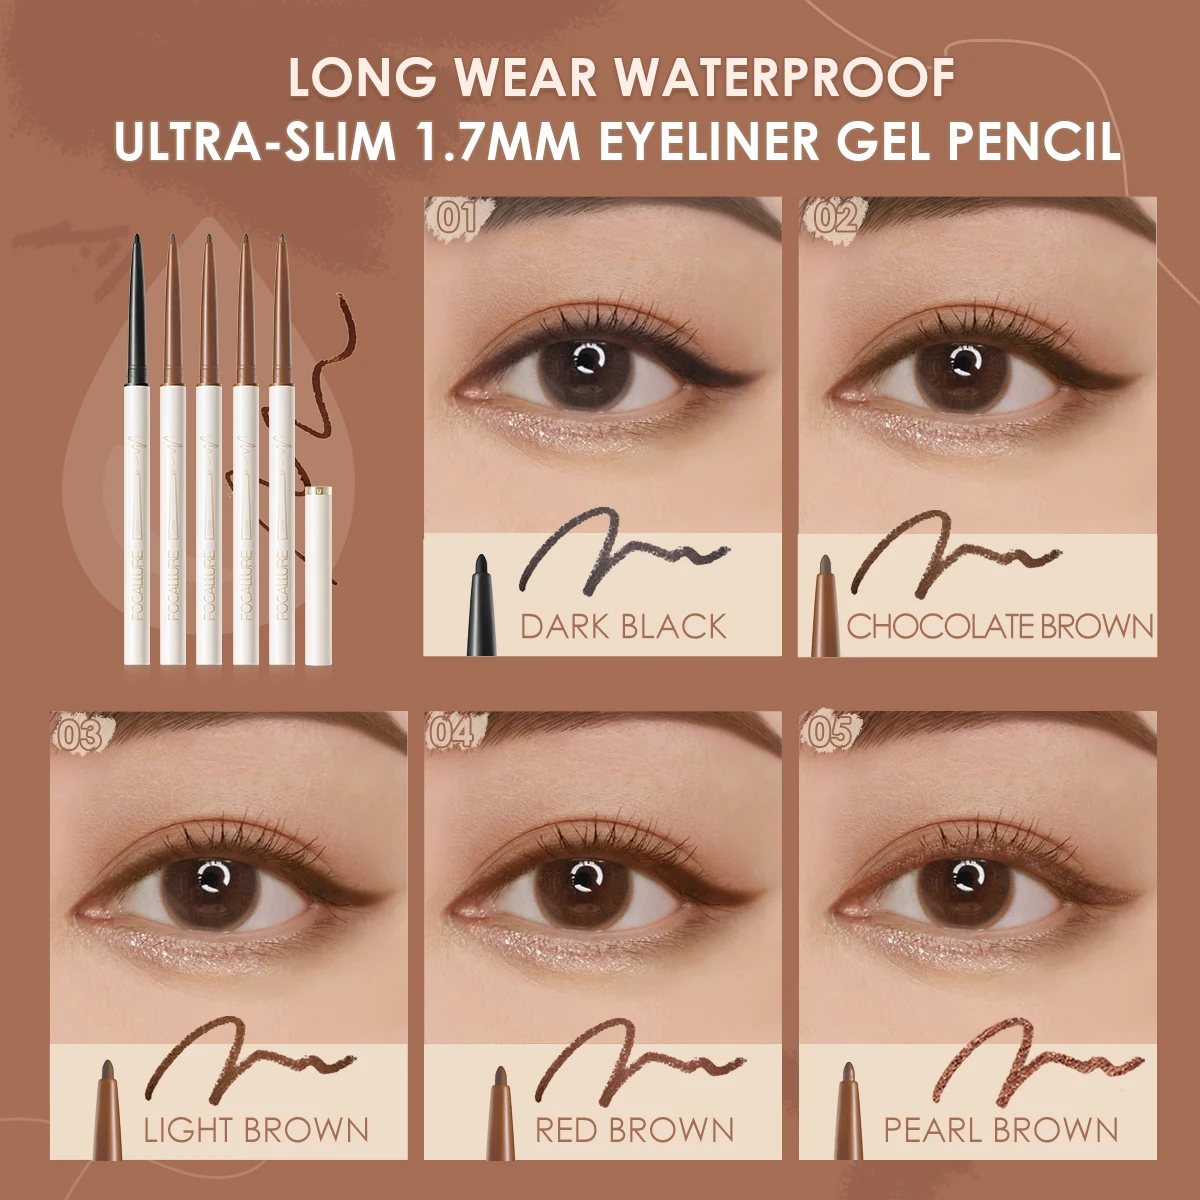 FOCALLURE Waterproof Eyeliner Gel Pencil Ultra-slim 1.7mm Soft Easy Wear High Pigment Professional Lasting Eyes Makeup